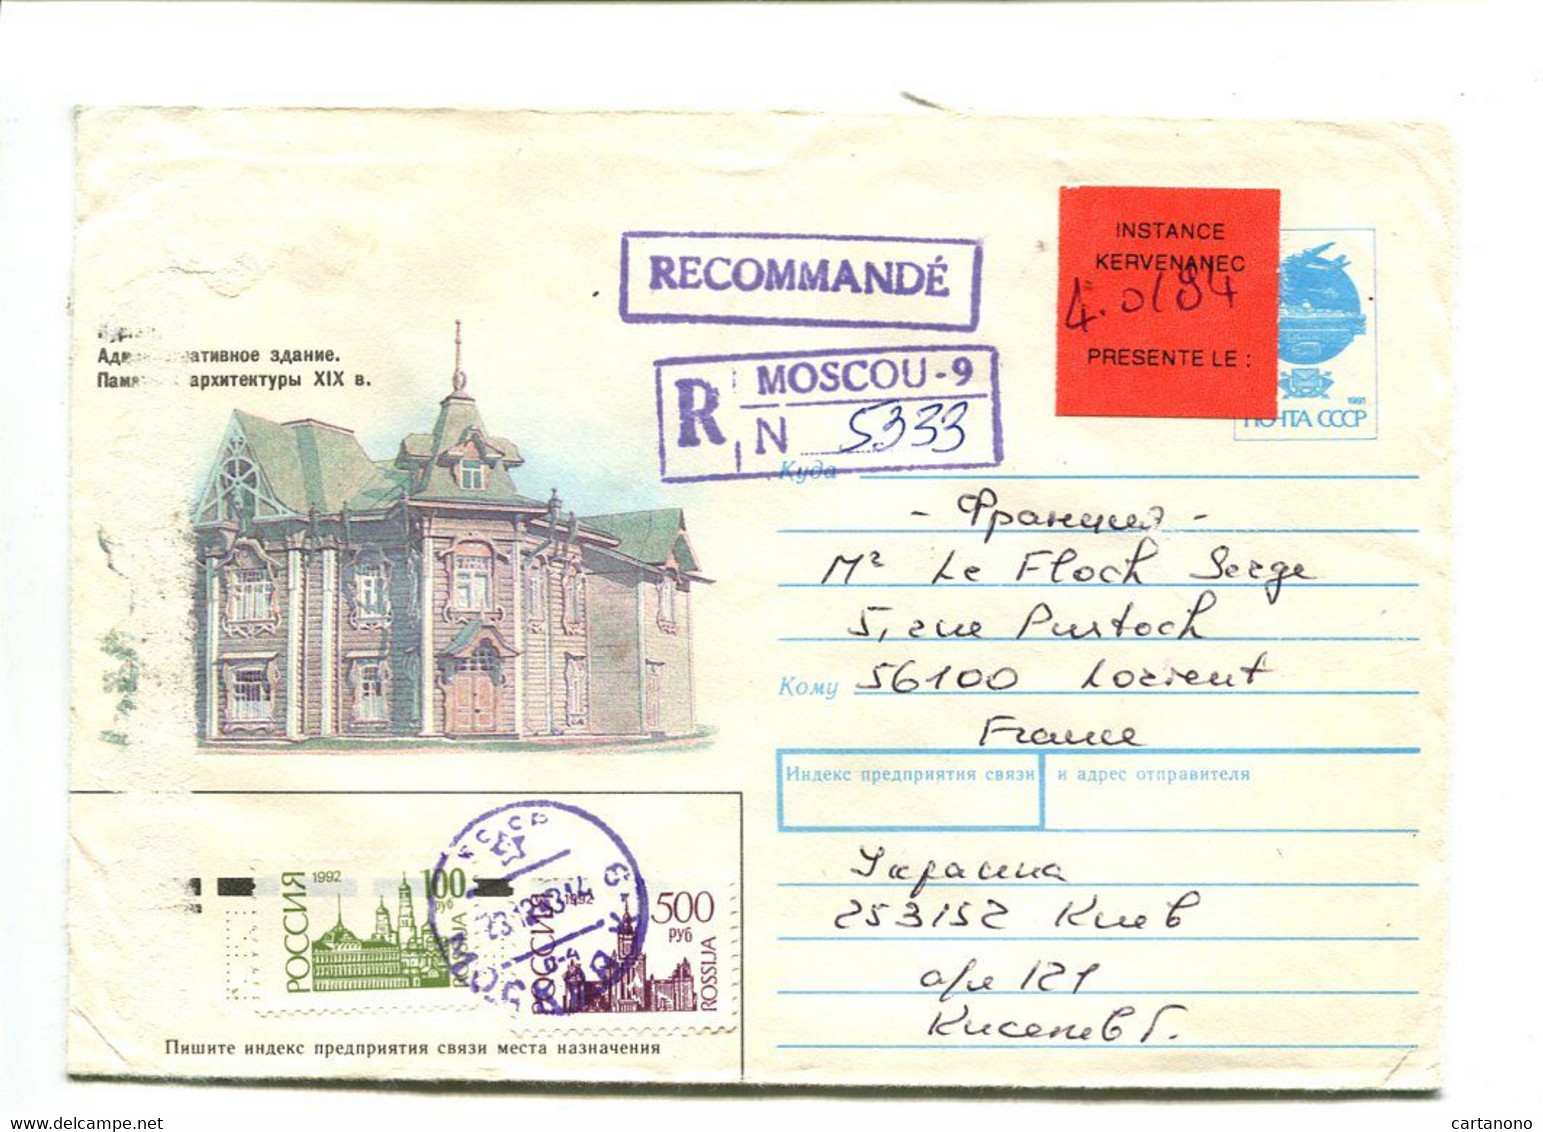 RUSSIE Moscou 1994 - Entier Postal Avec Complément D'affranchissement Pour Recommandation + Etiquette "Instance..." - Lettres & Documents